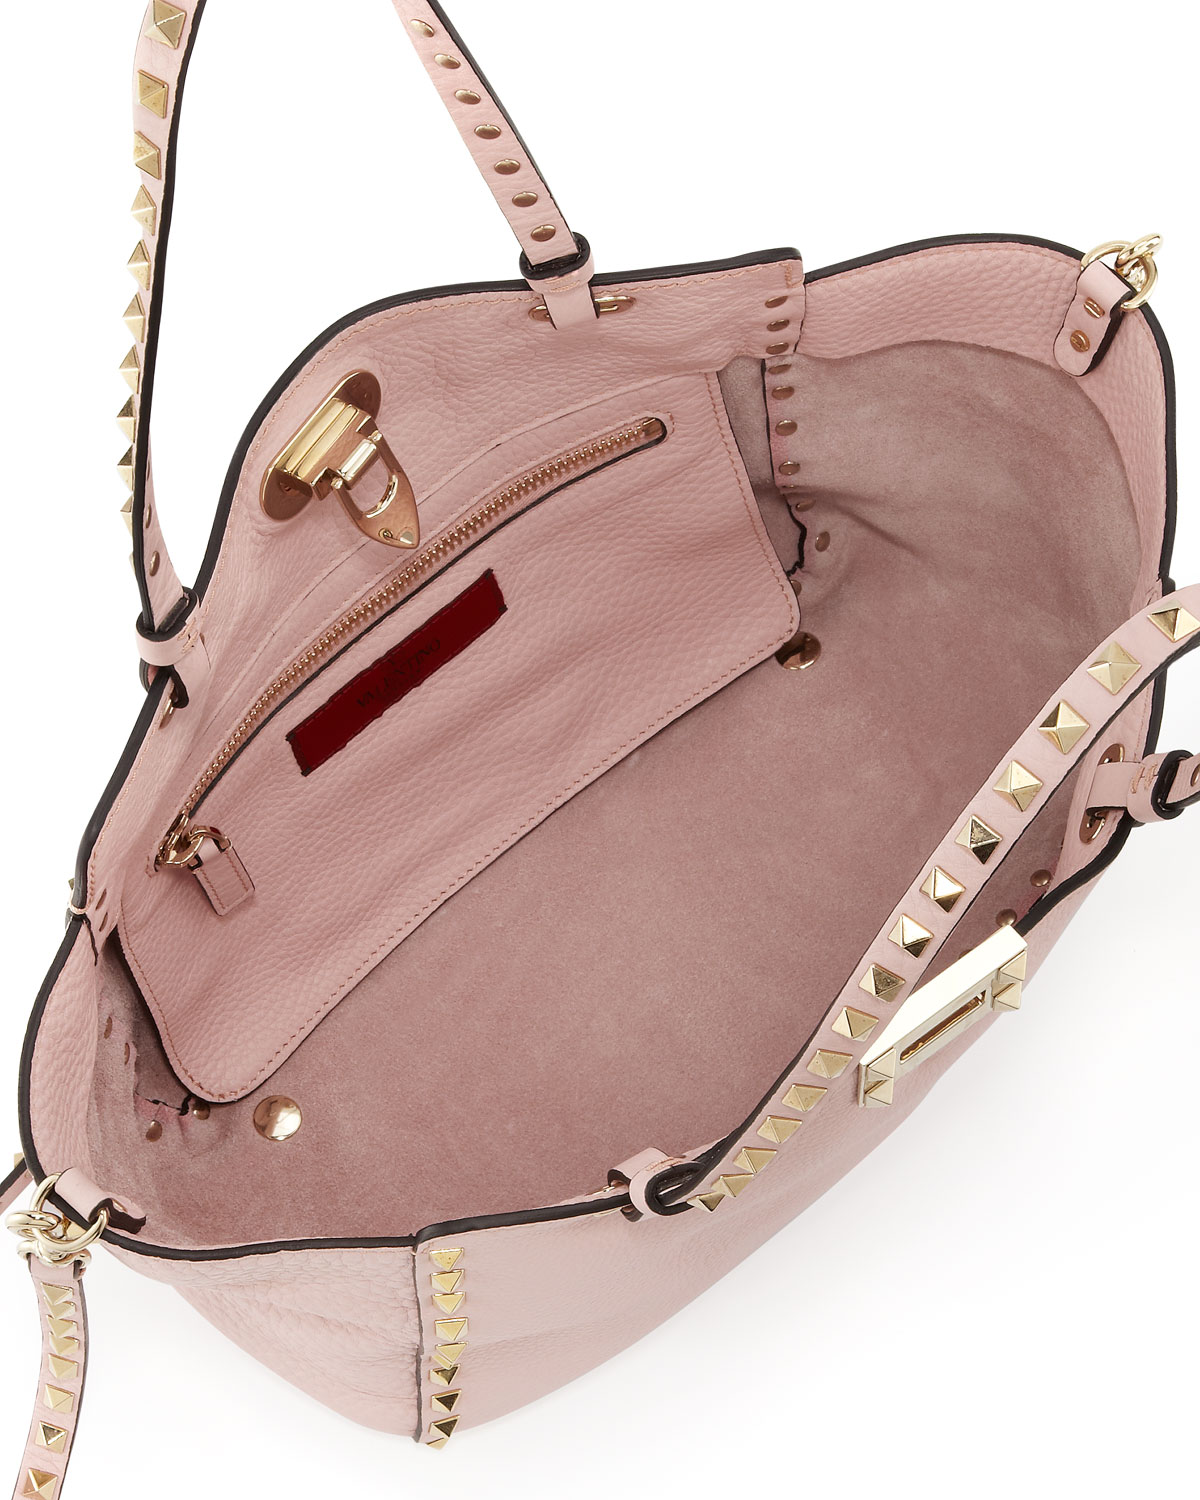 Valentino Rockstud Mini Tote Bag Light Pink in Pink | Lyst